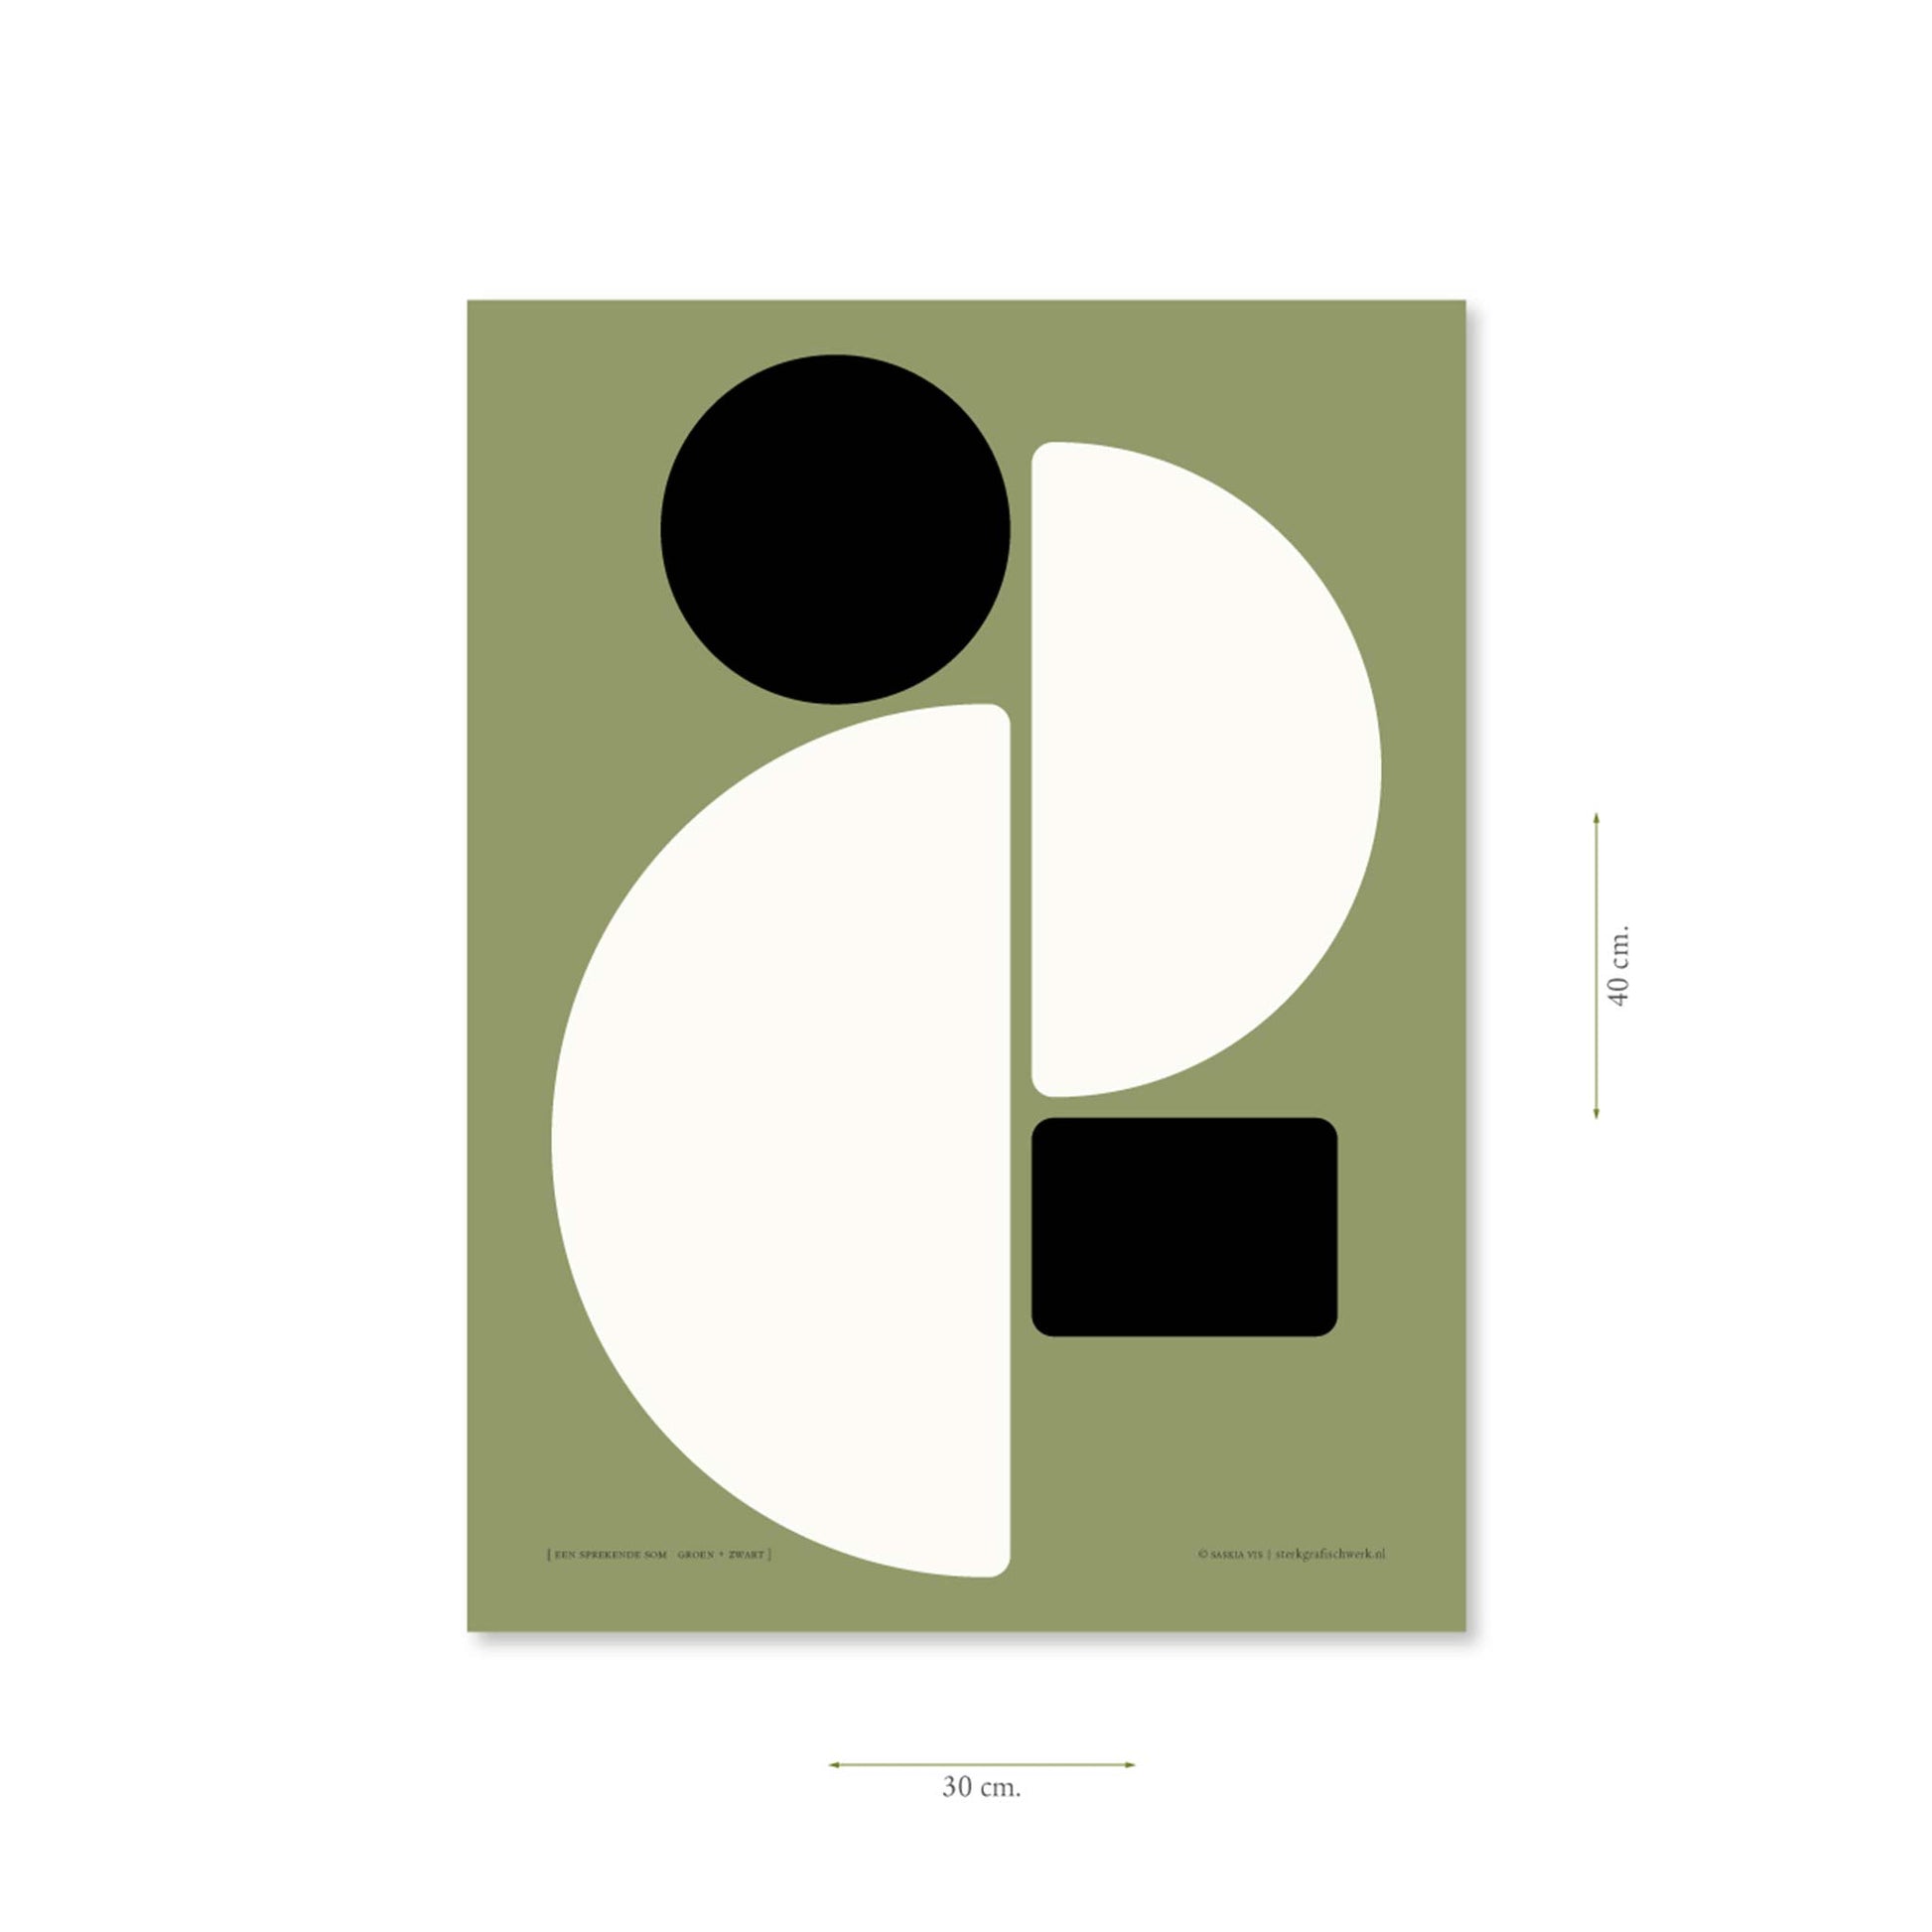 Productafbeelding, poster "een sprekende som groen+zwart", met aanduiding van het formaat erop weergegeven 30 x 40 cm